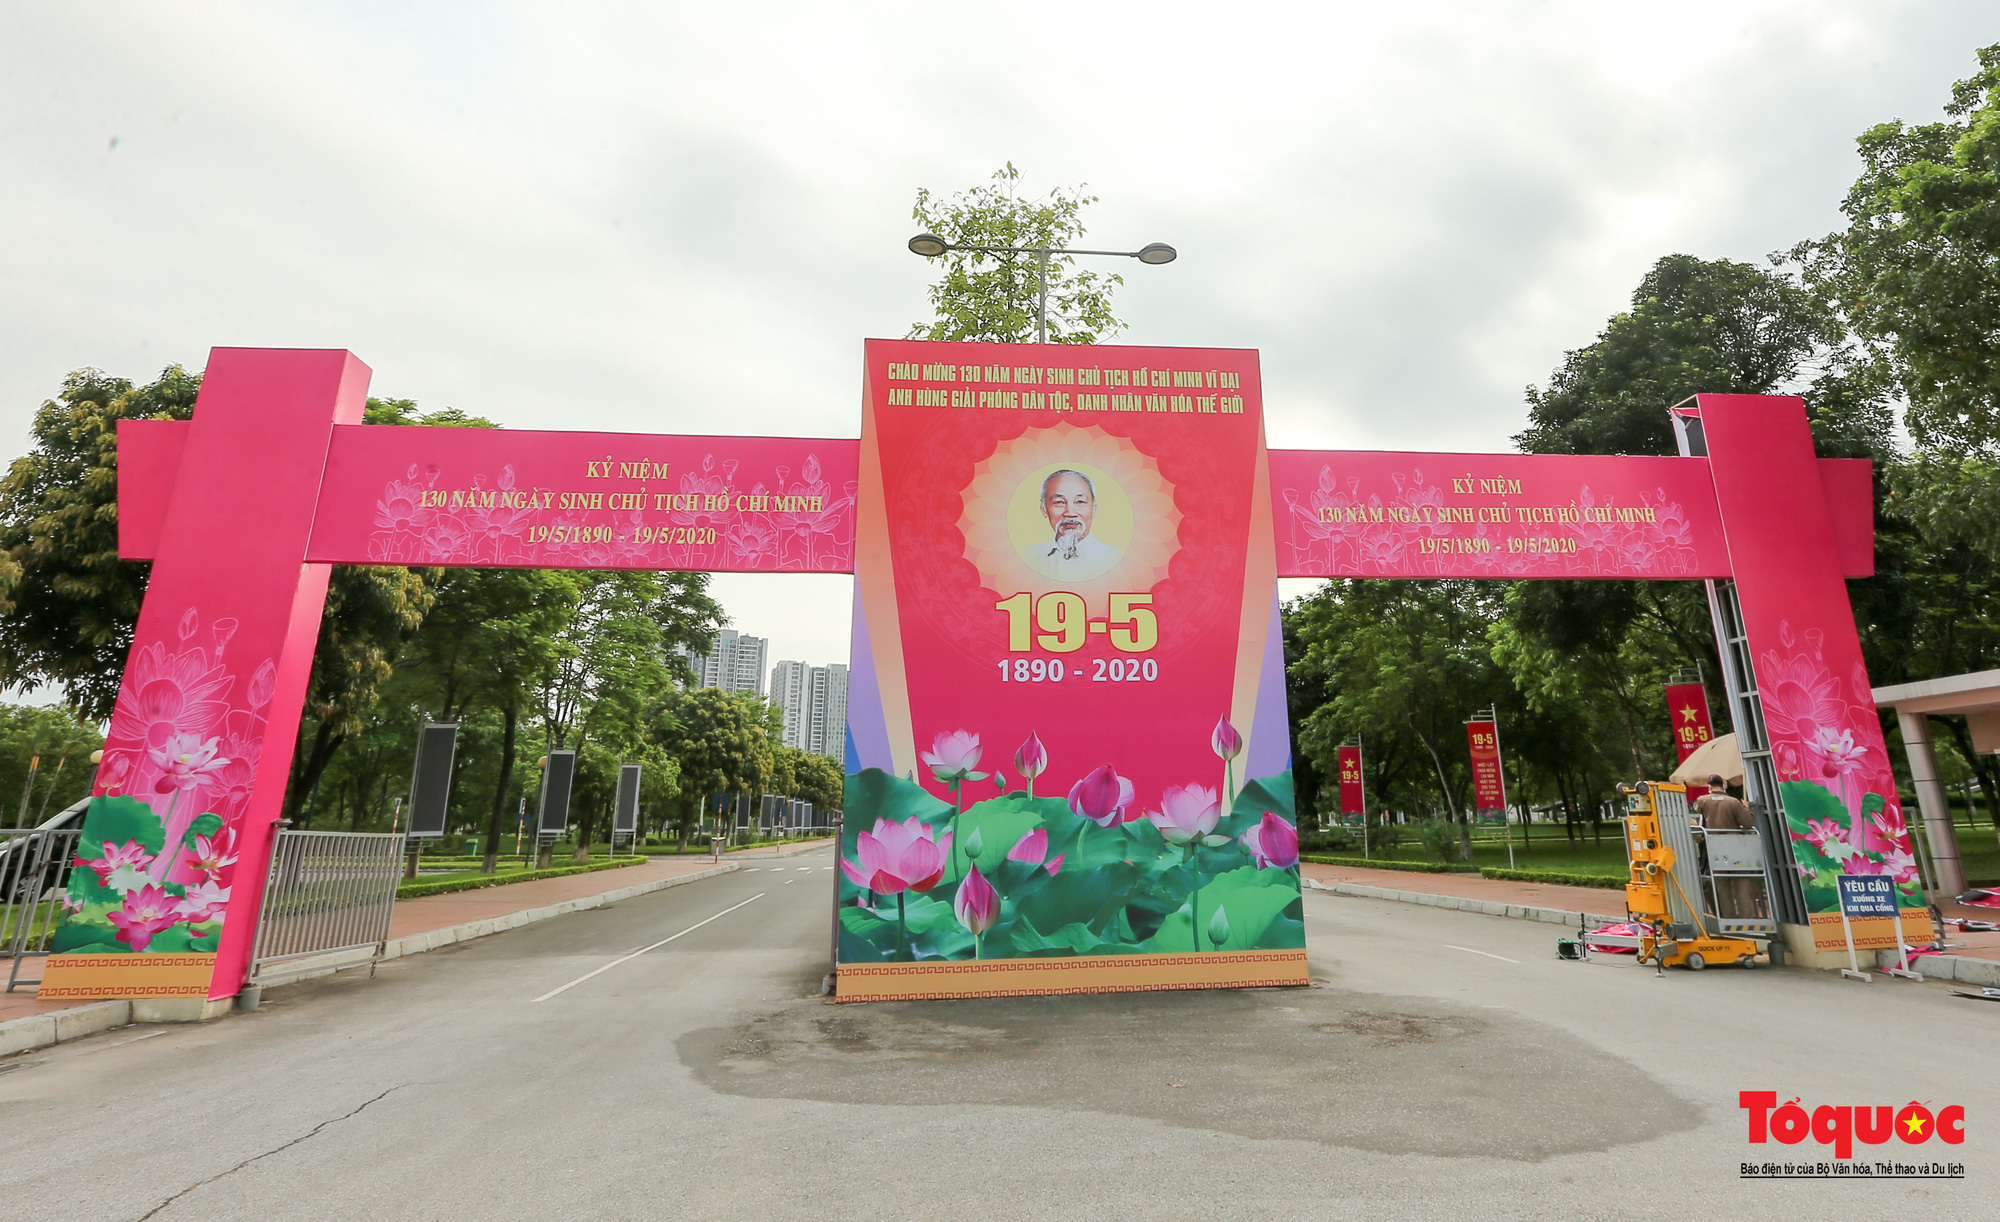 Hà Nội trang hoàng rực rỡ kỷ niệm 130 năm Ngày sinh Chủ tịch Hồ Chí Minh - Ảnh 1.